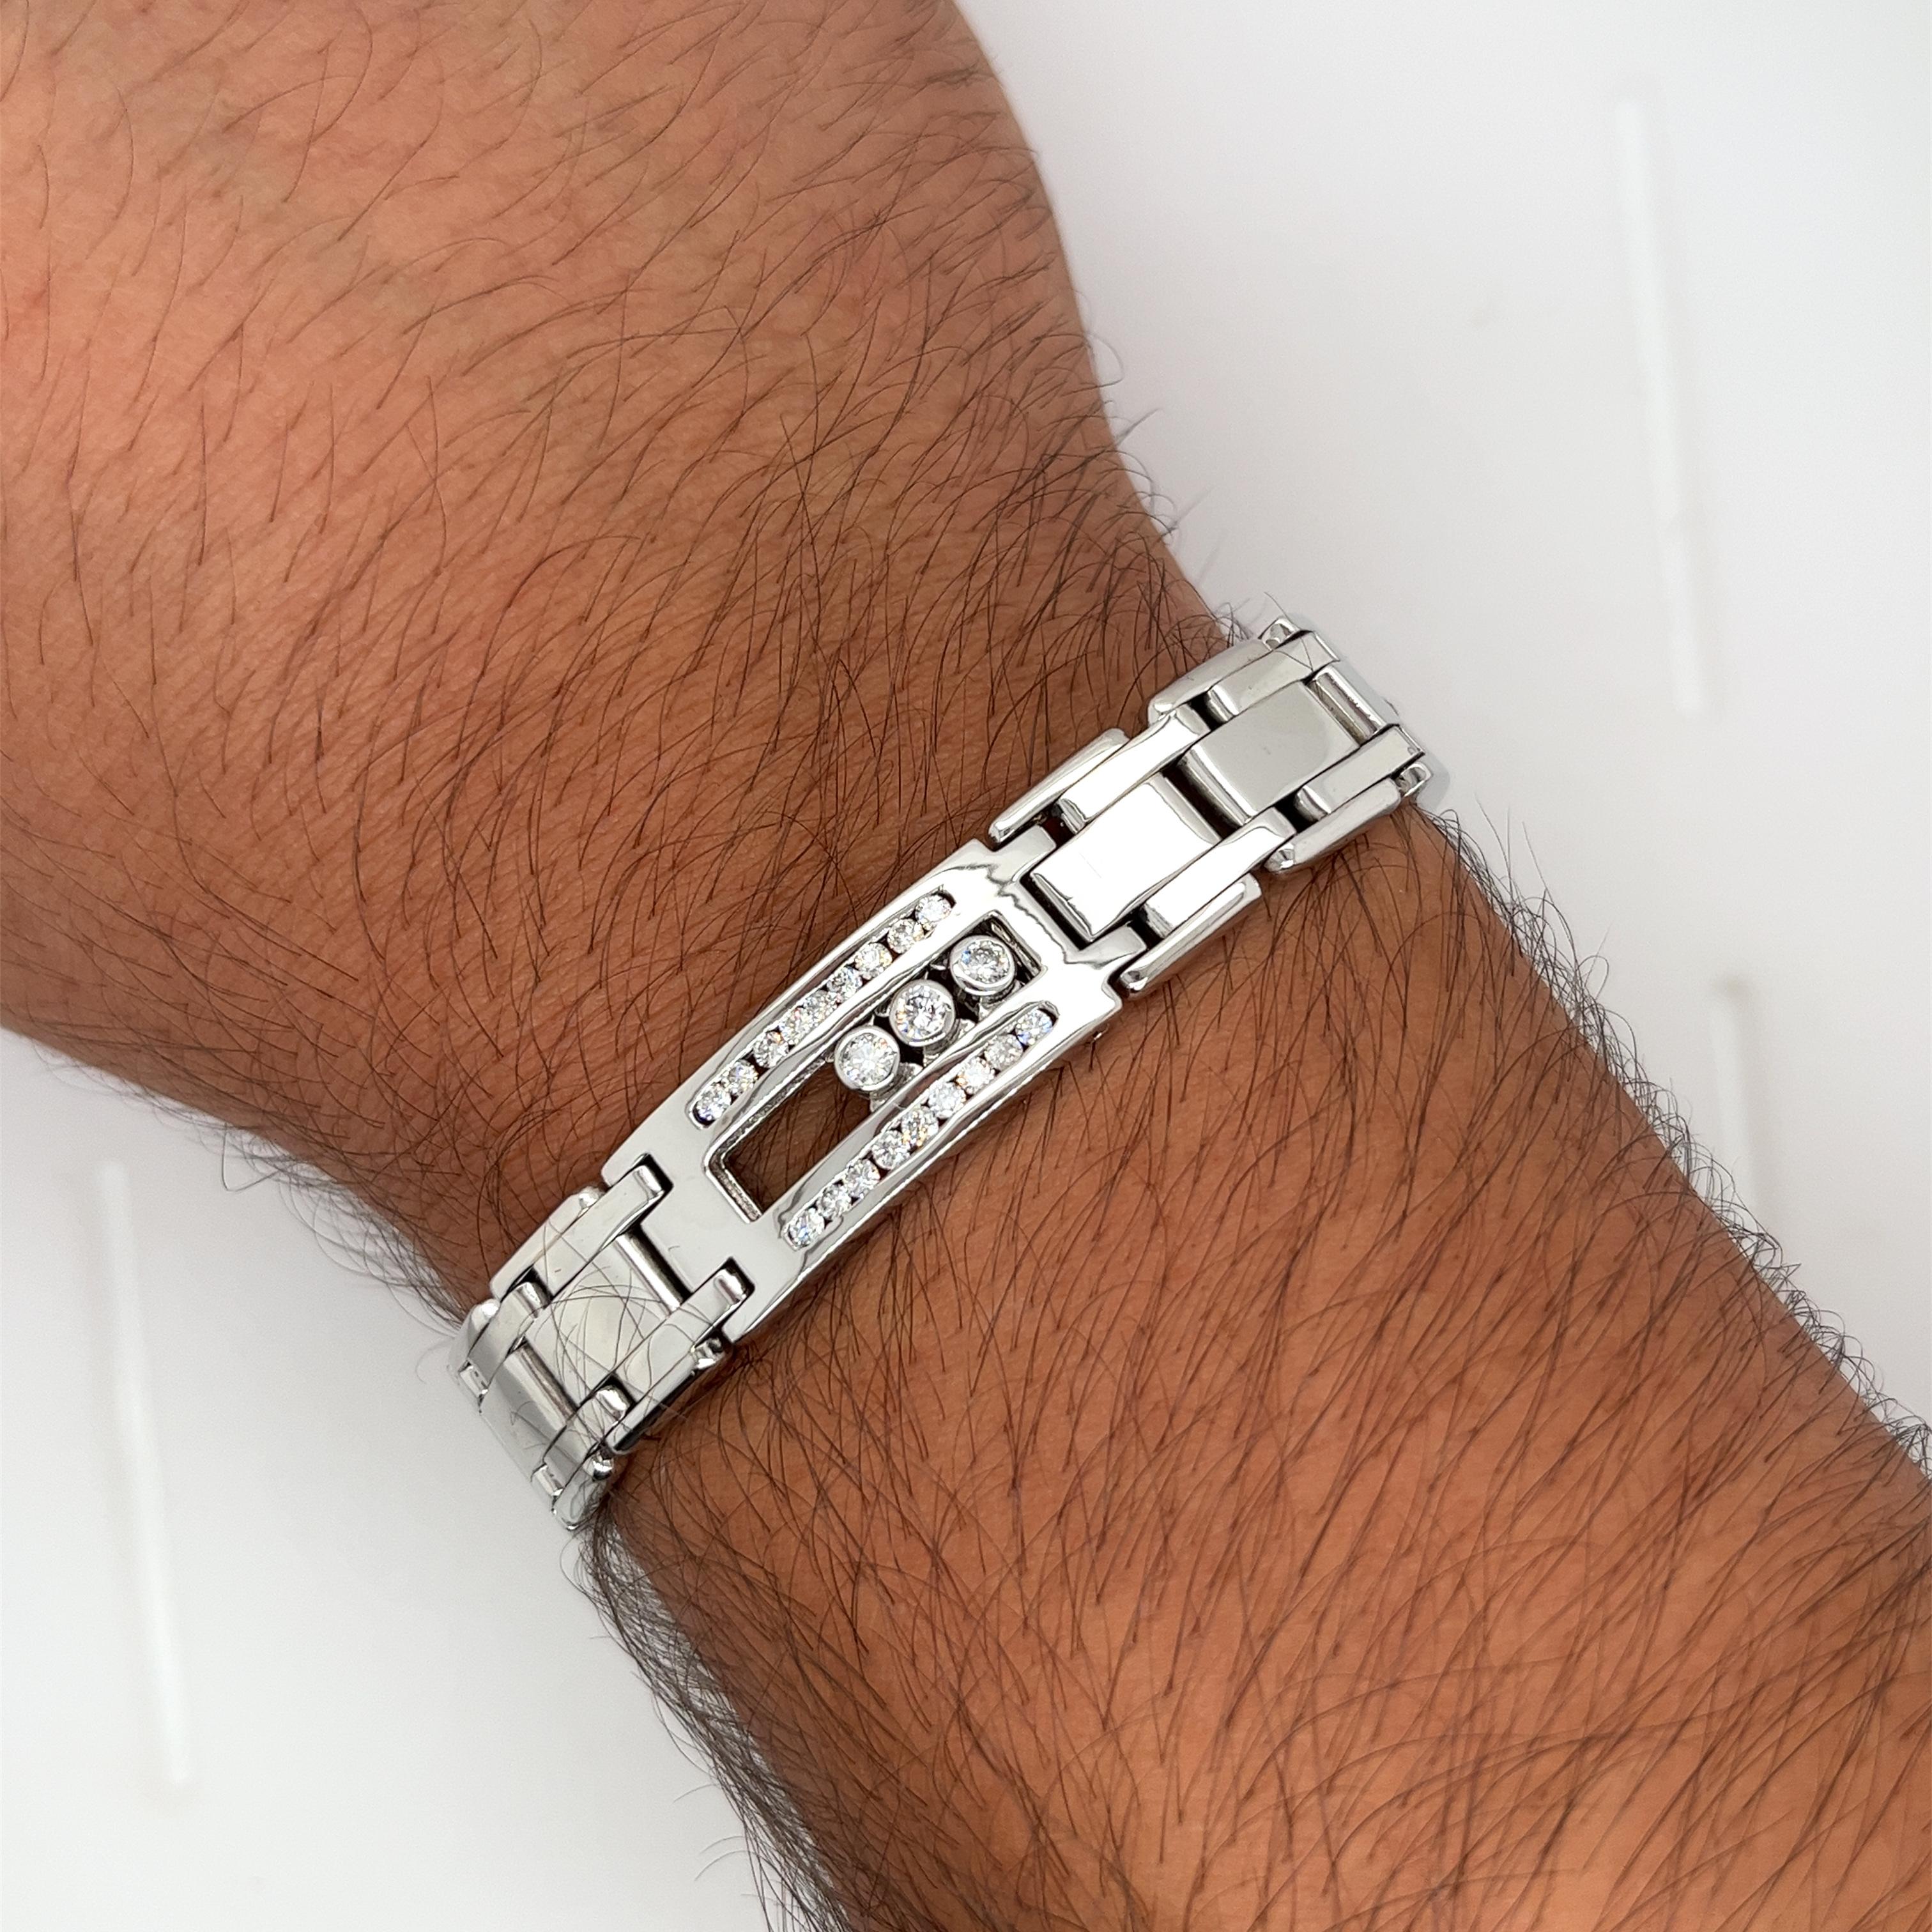 Achetez le bracelet que personne n'a. 

Ce bracelet unique comporte des diamants mobiles qui glissent le long de l'intérieur de la chaîne. Une marque extraordinaire avec des diamants de taille ronde à l'œil nu. Serti en or blanc massif 14 carats et